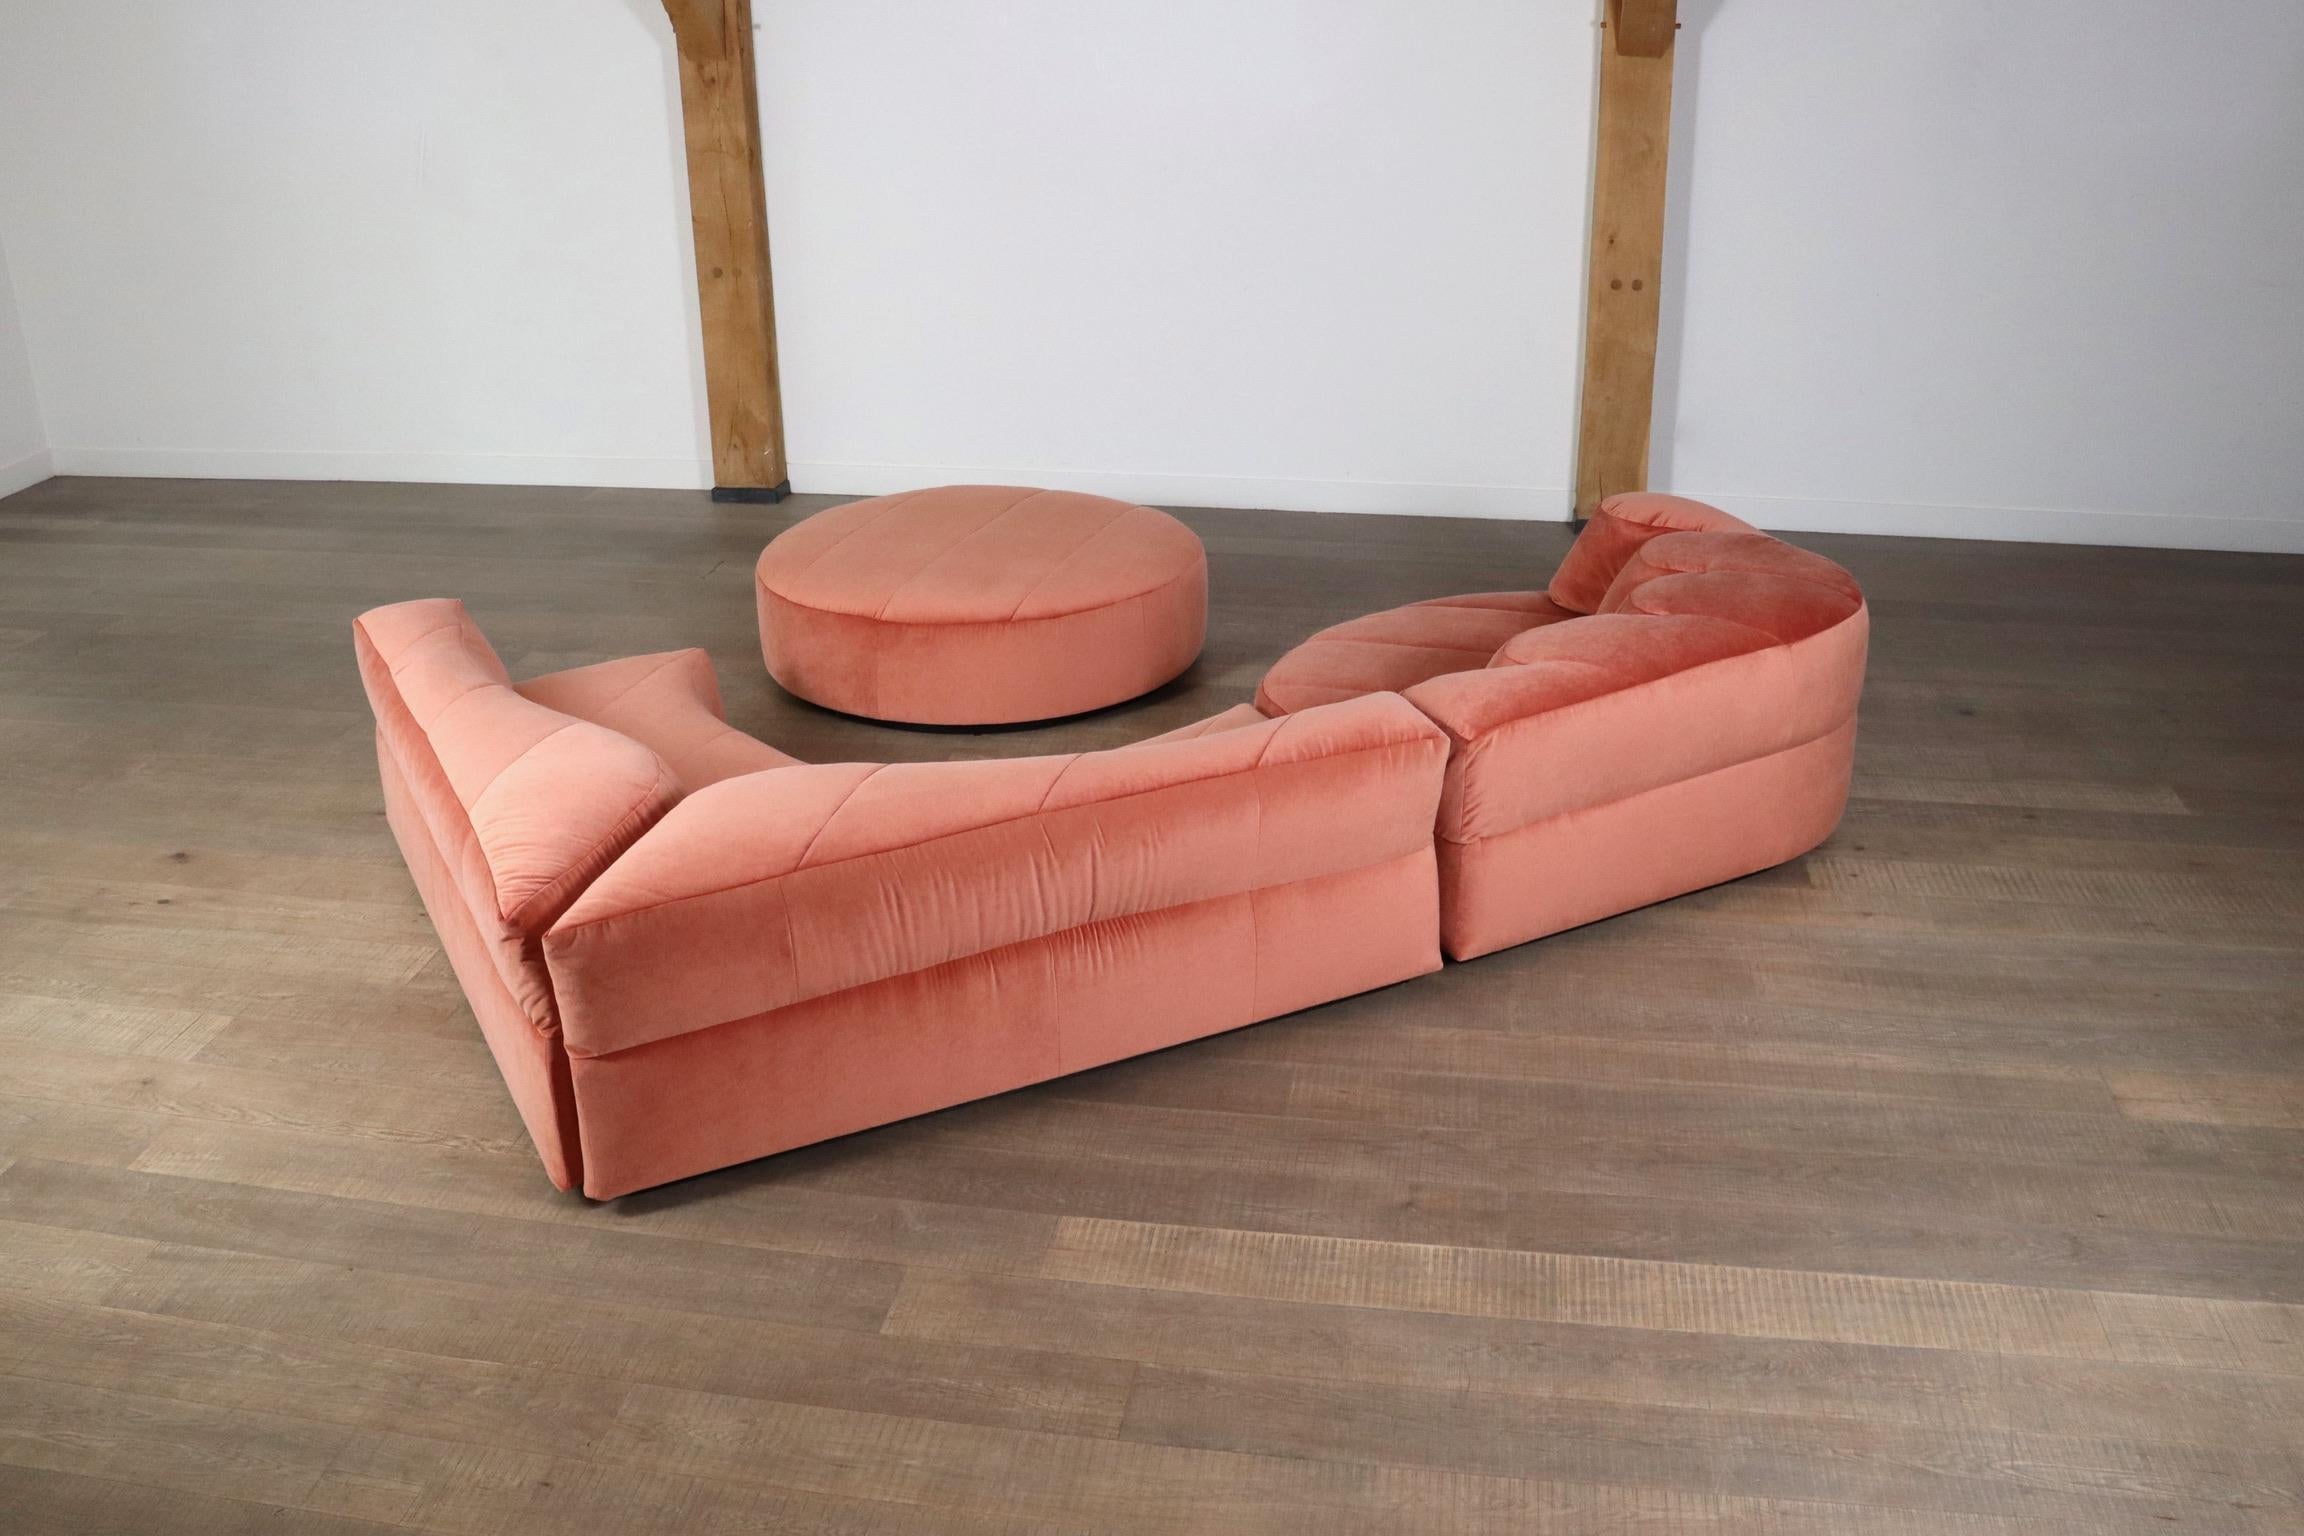 Roche Bobois “Paysage” Sofa In Coral Velvet By Hans Hopfer For Roche Bobois 1974 10